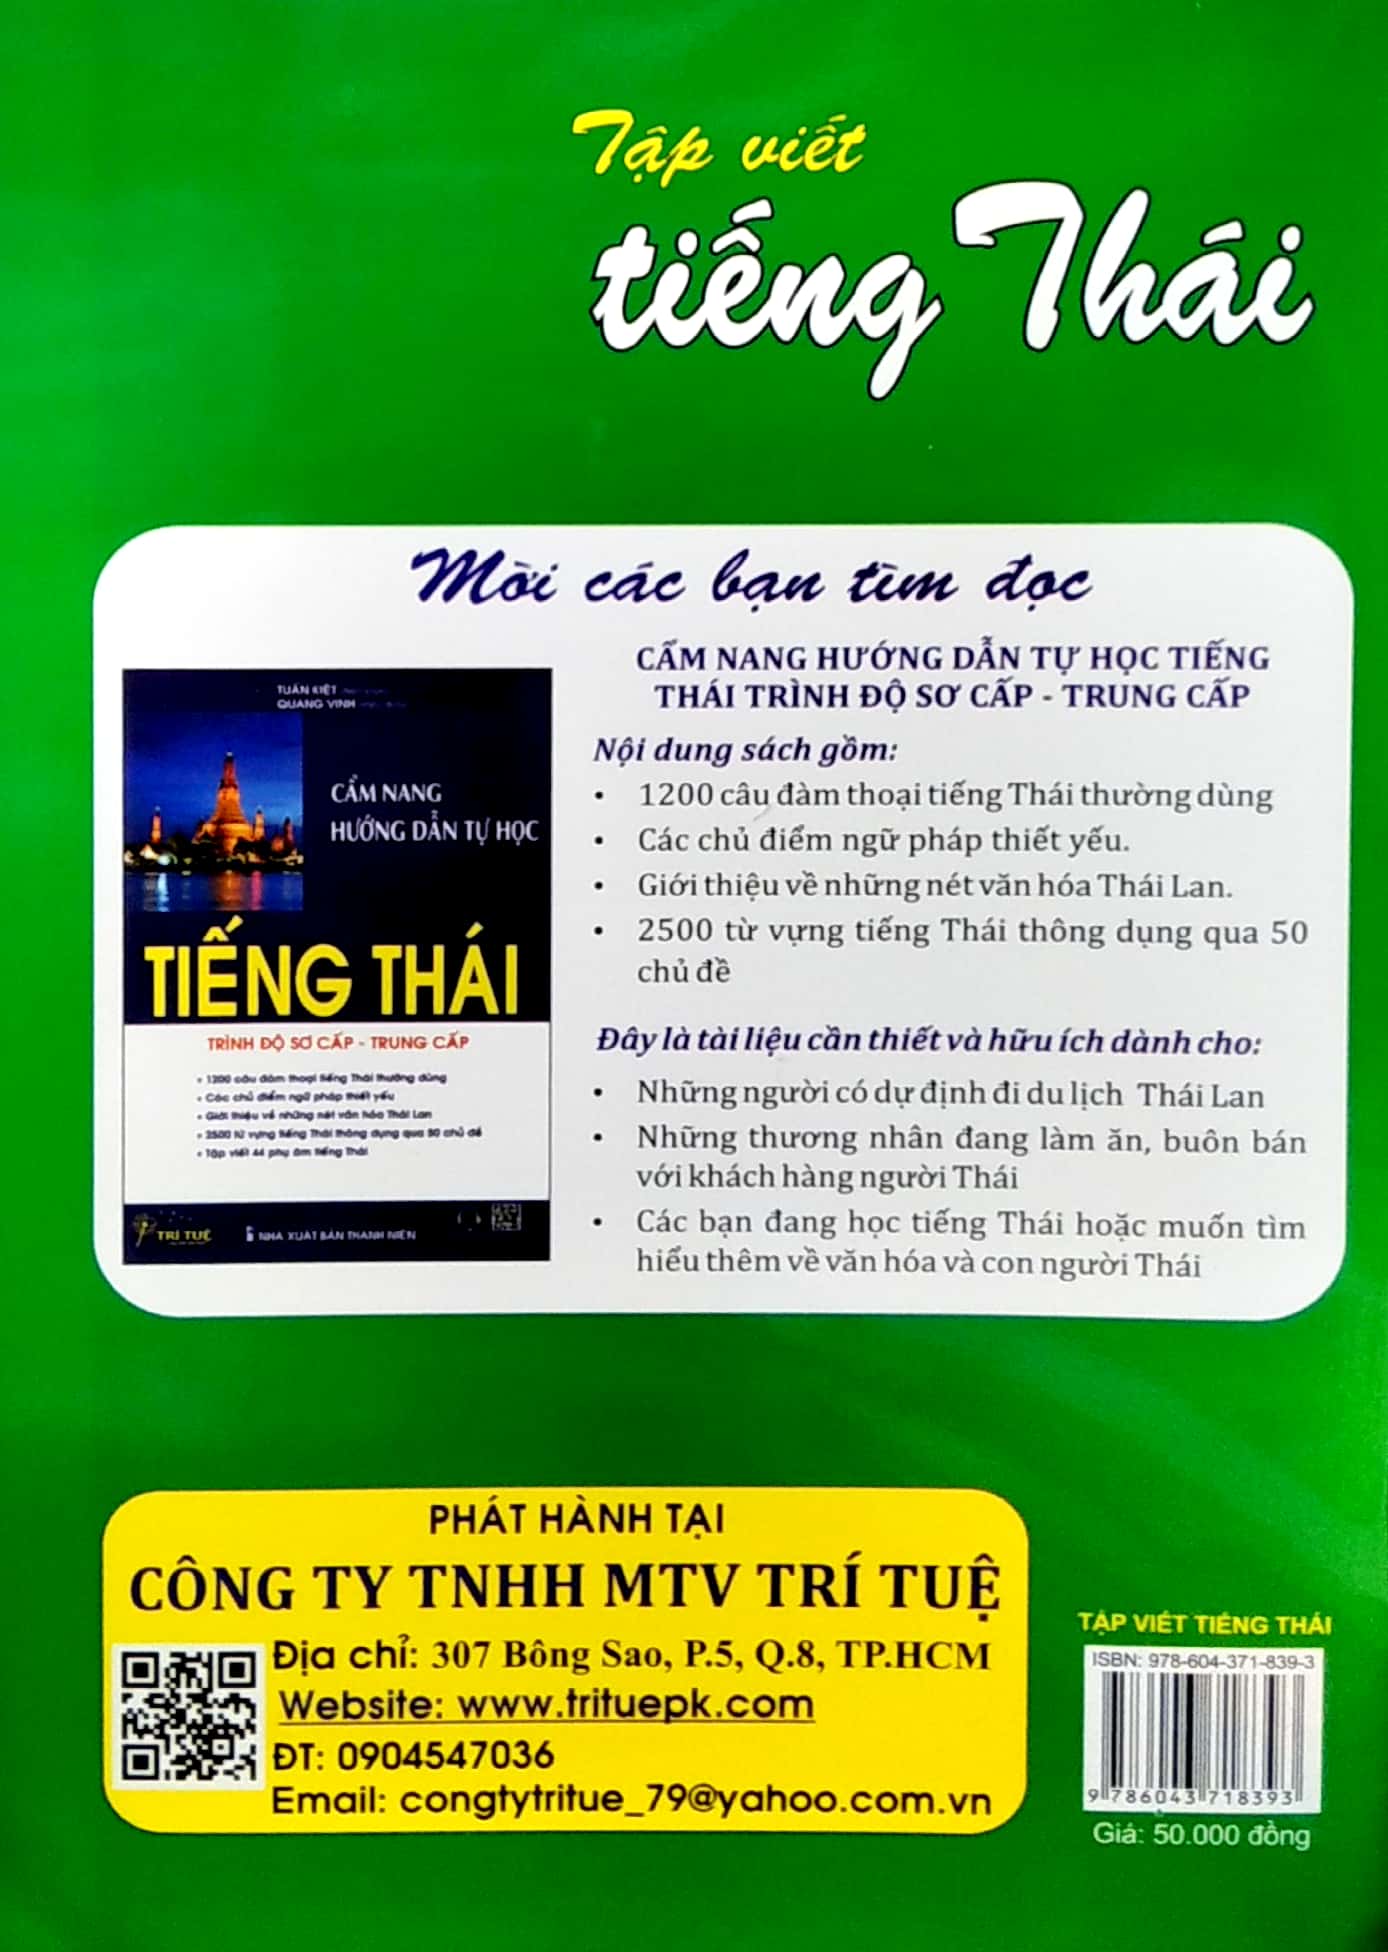 Combo Học Tiếng Thái - Cẩm Nang Hướng Dẫn Tự Học Tiếng Thái (Trình Độ Sơ Cấp - Trung Cấp) + Tập Viết Tiếng Thái - Nguyên Âm Và Số + 44 Phụ Âm